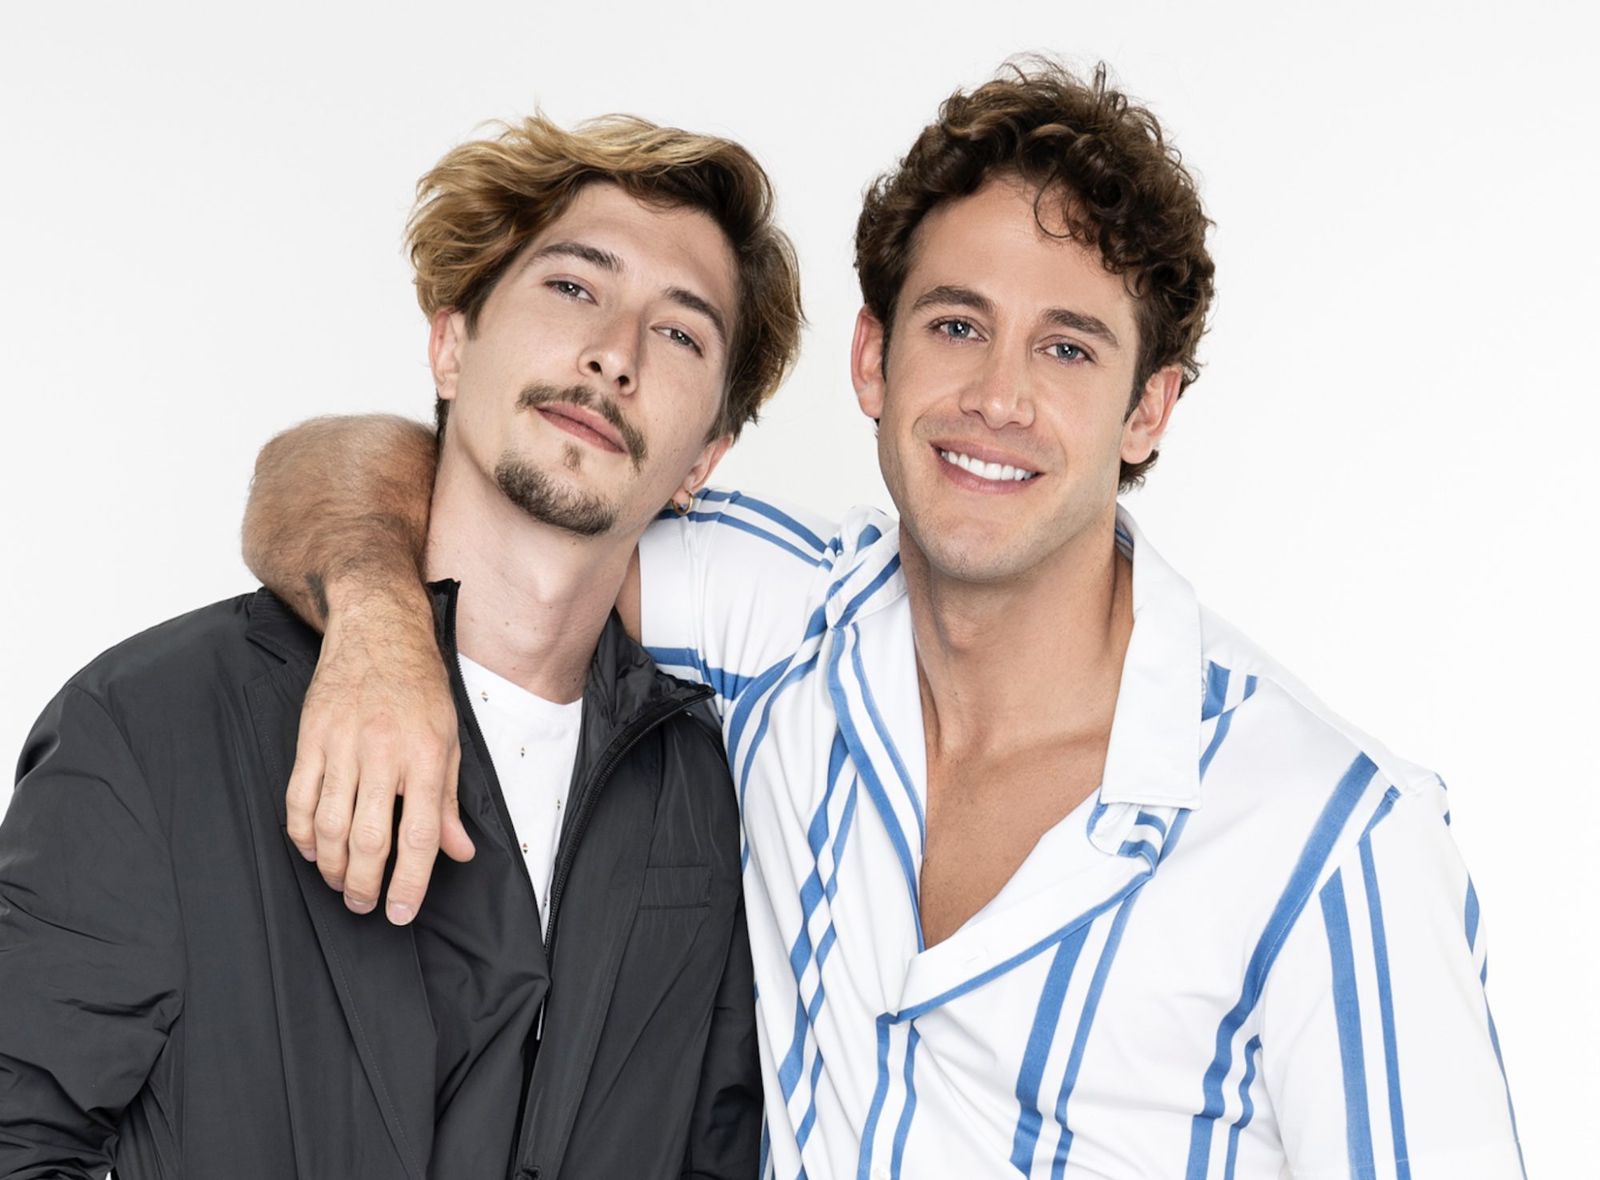 Televisa apuesta por pareja gay en su próxima telenovela - Infobae